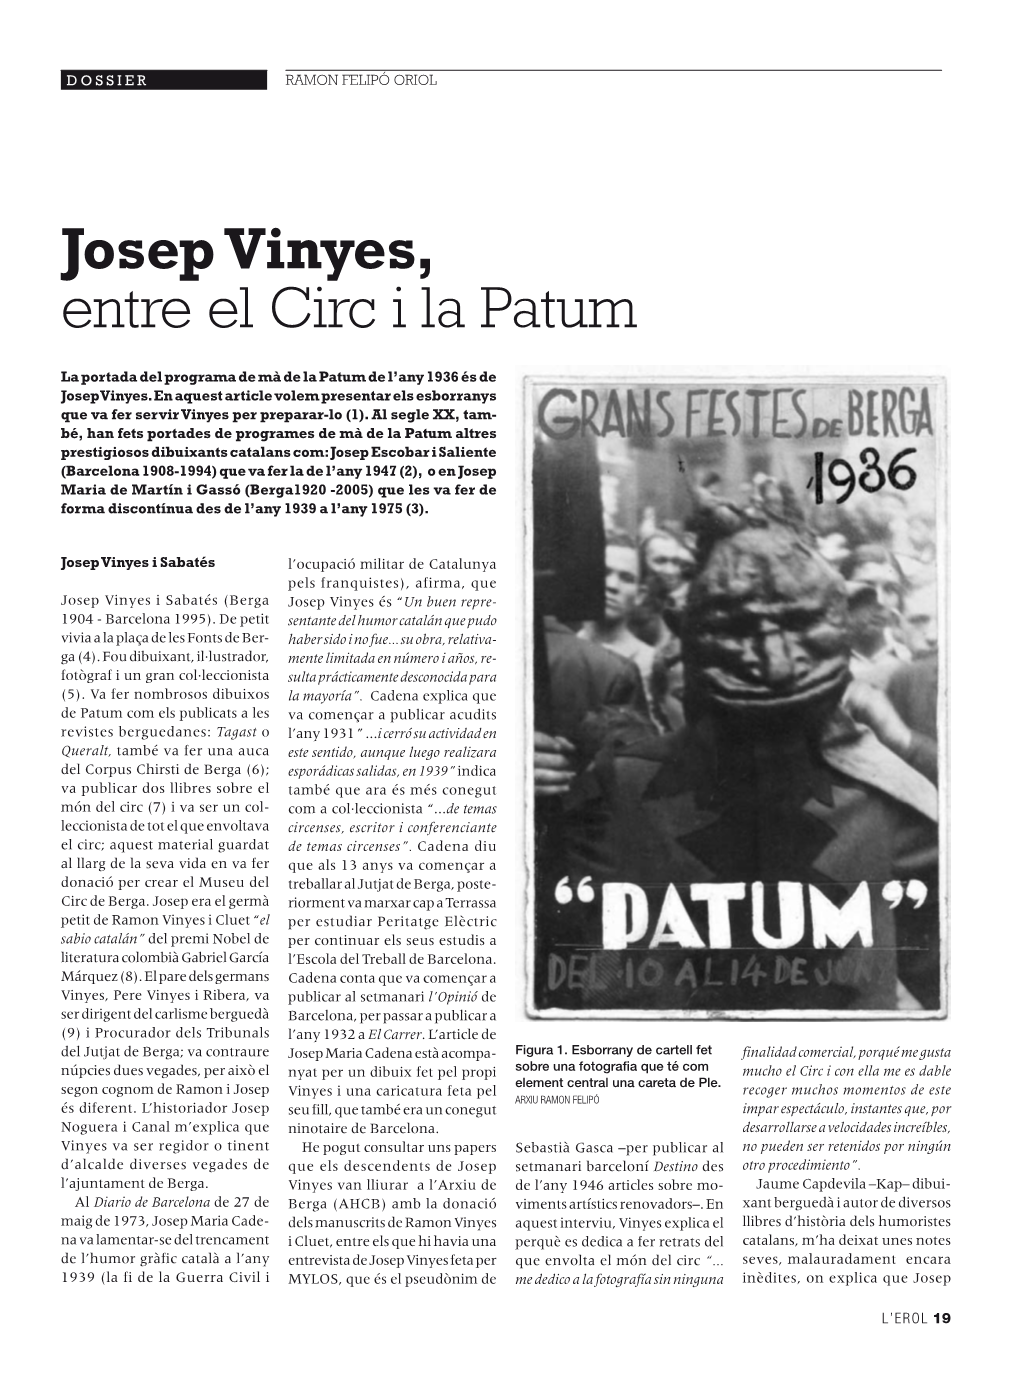 Josep Vinyes, Entre El Circ I La Patum